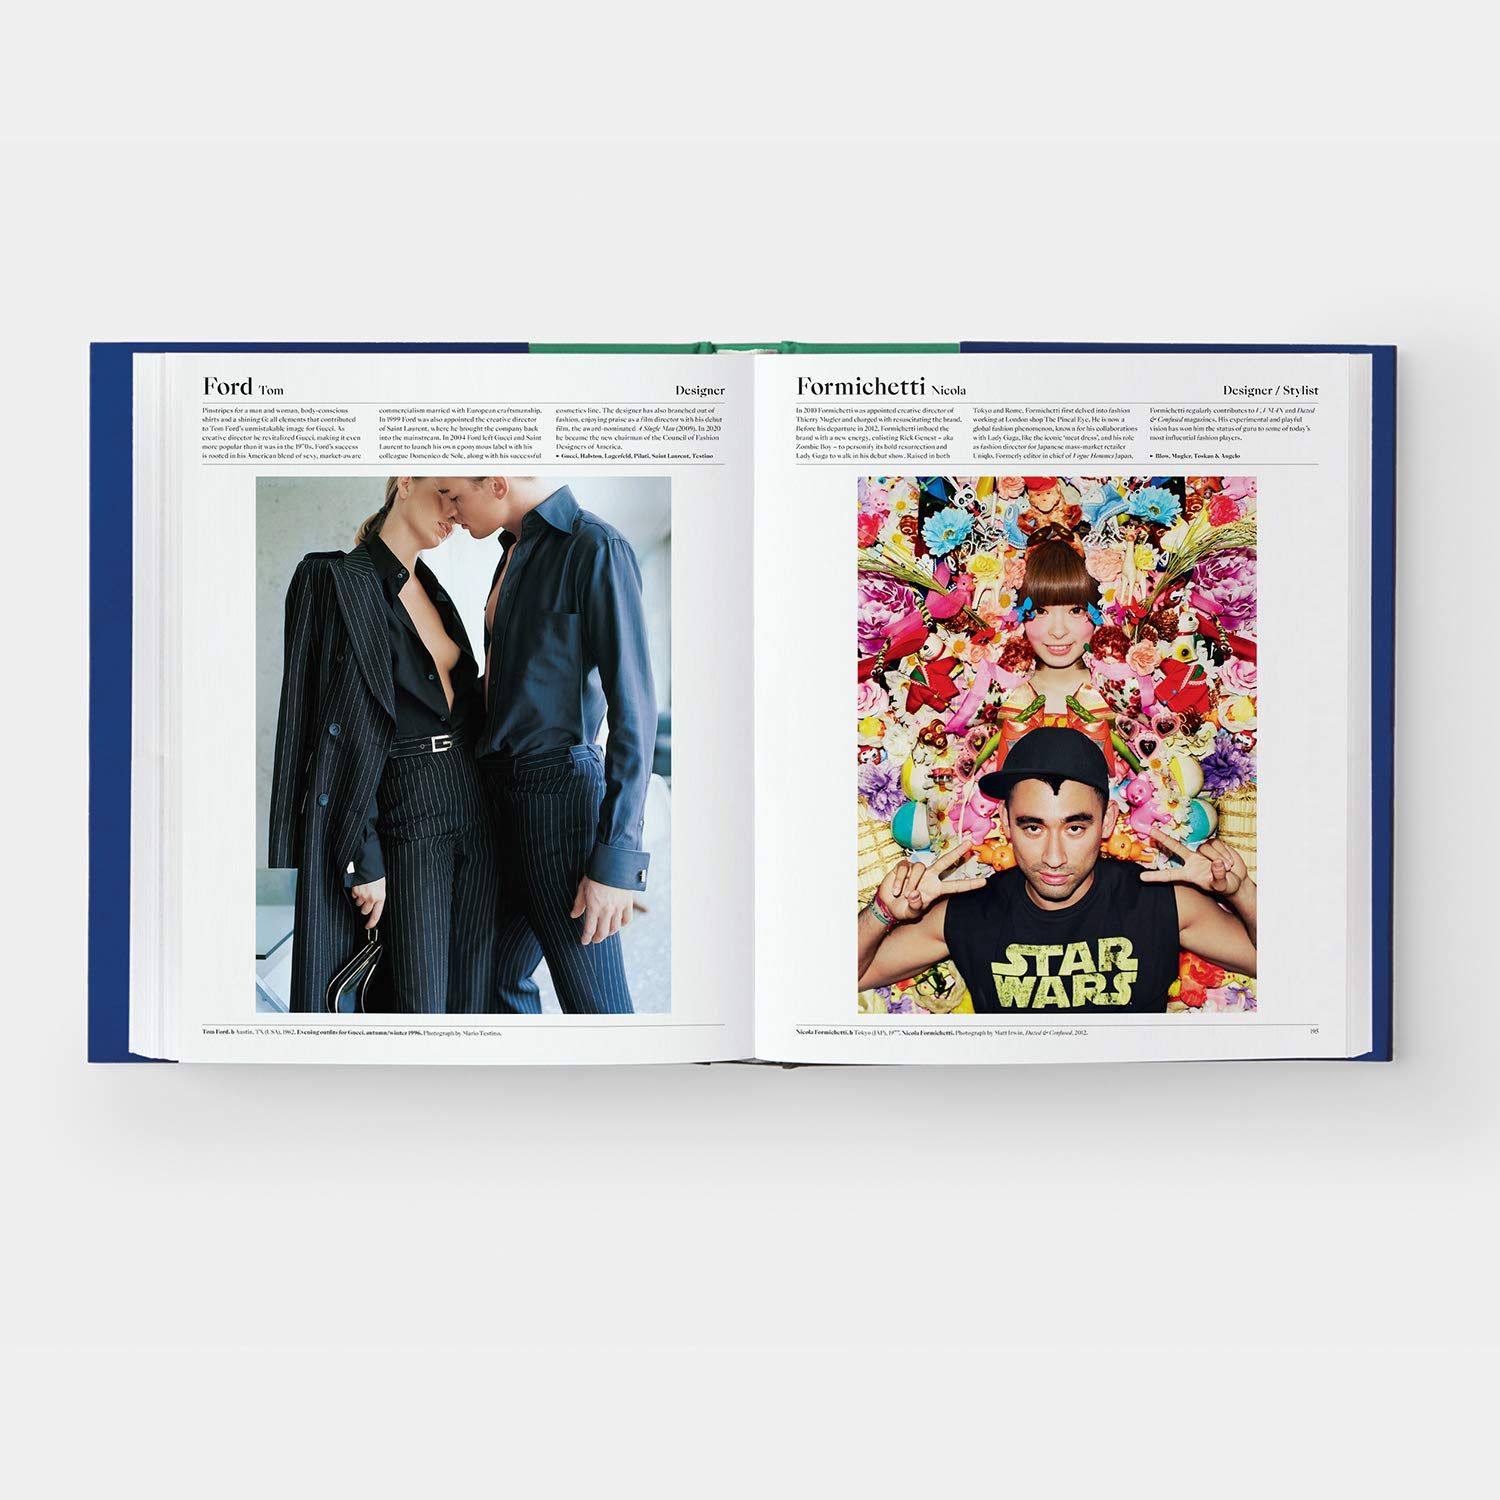  The Fashion Book_Phaidon Editors_9781838661106_Phaidon Press Ltd 